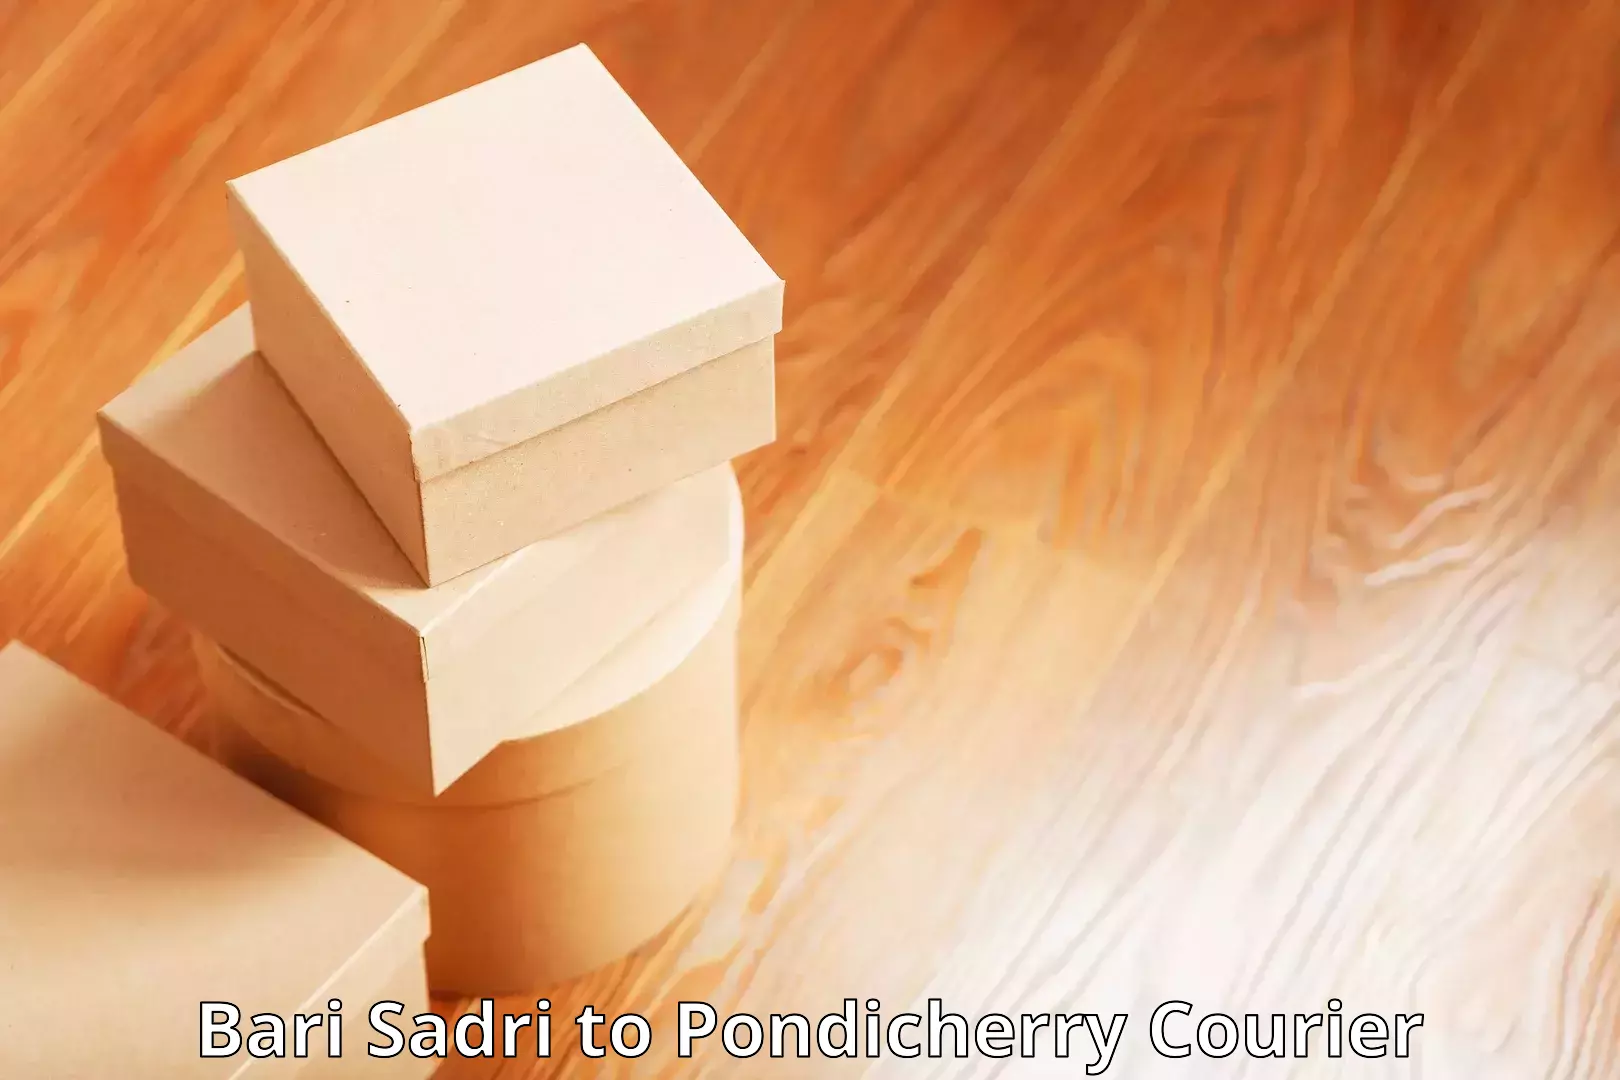 Personalized courier experiences Bari Sadri to Pondicherry